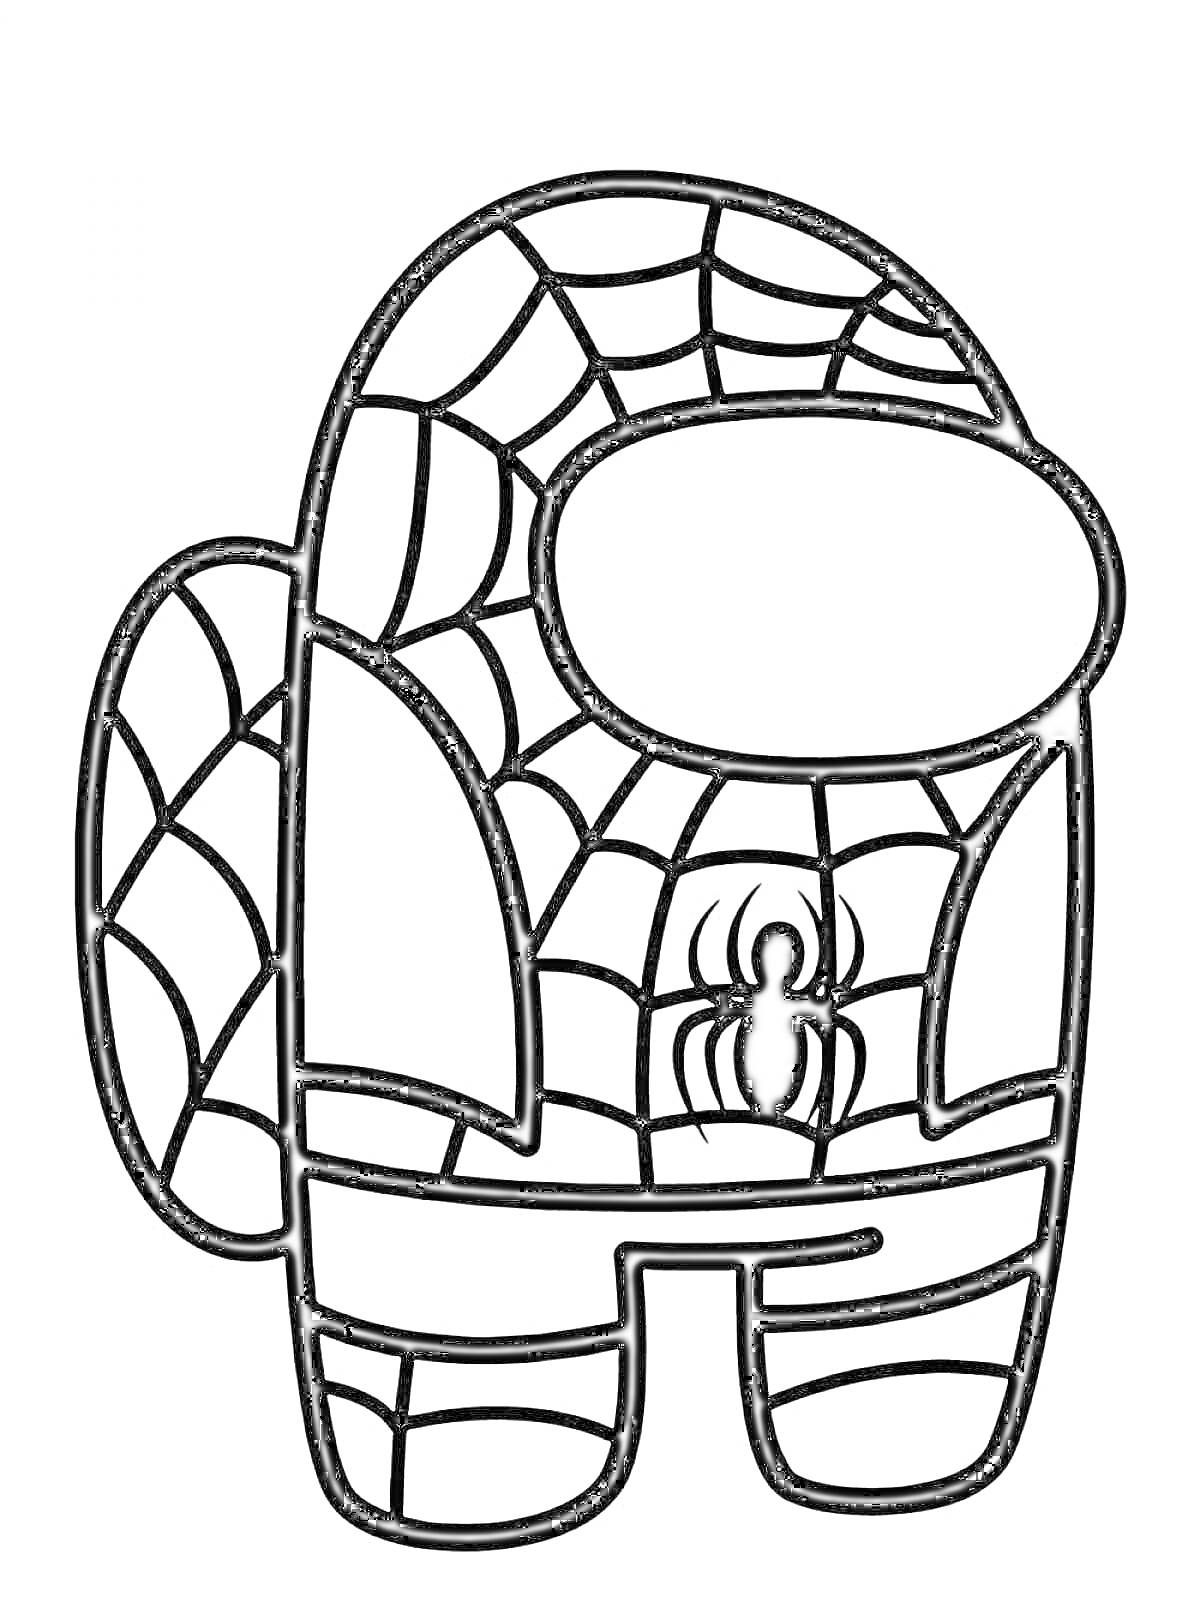 Раскраска Персонаж из Among Us в костюме Человека-Паука с паутиной и пауком на одежде